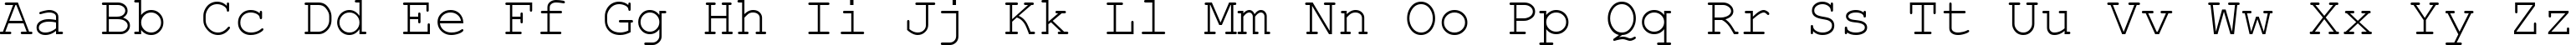 Пример написания английского алфавита шрифтом Rod